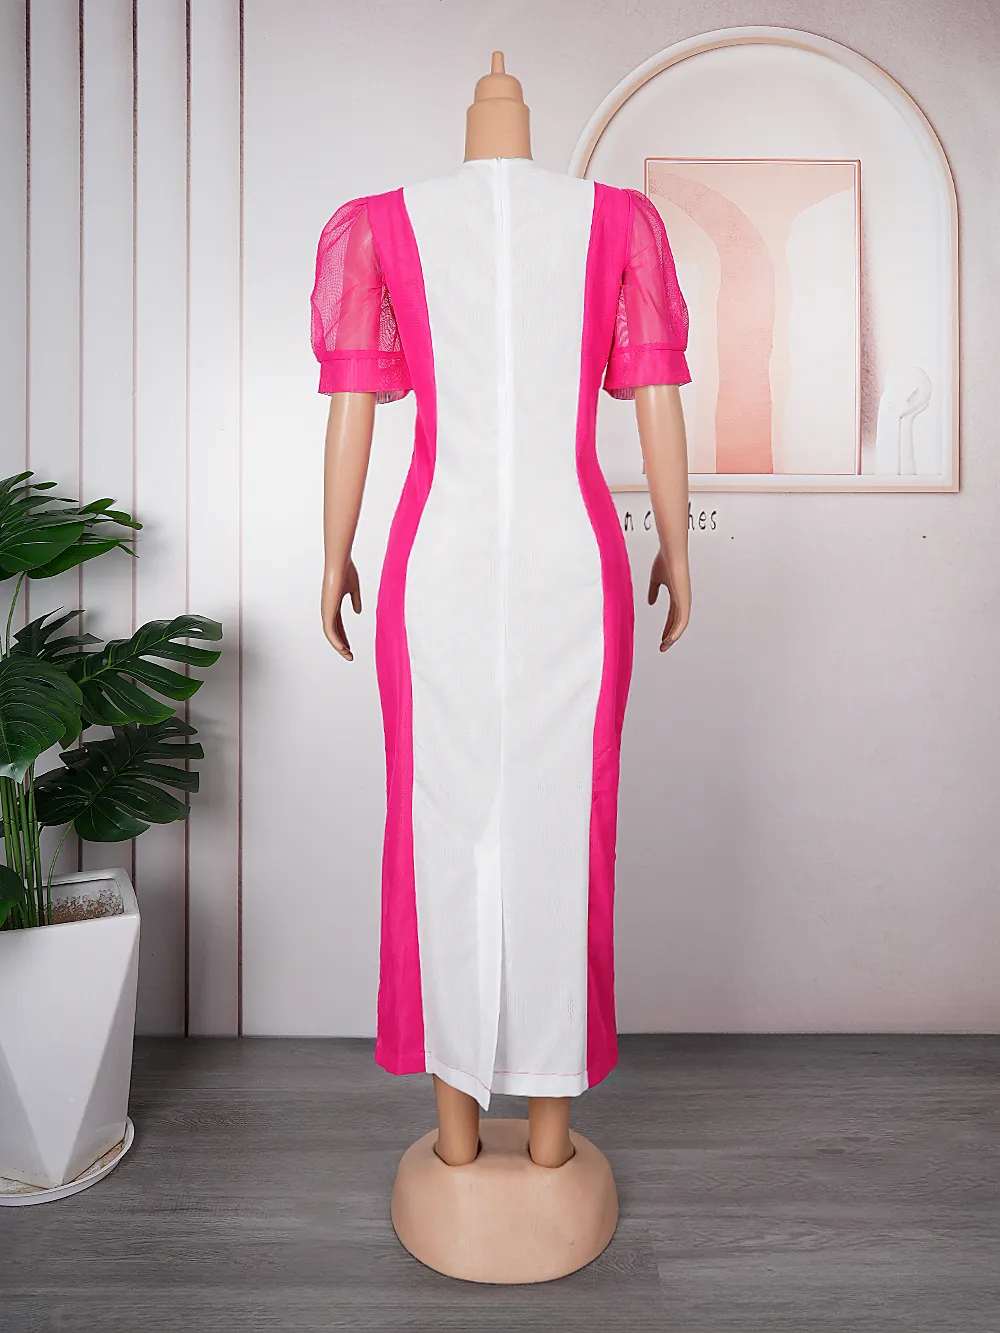 H & D модные африканские платья для женщин большие размеры Макси элегантные наряды для вечеринок